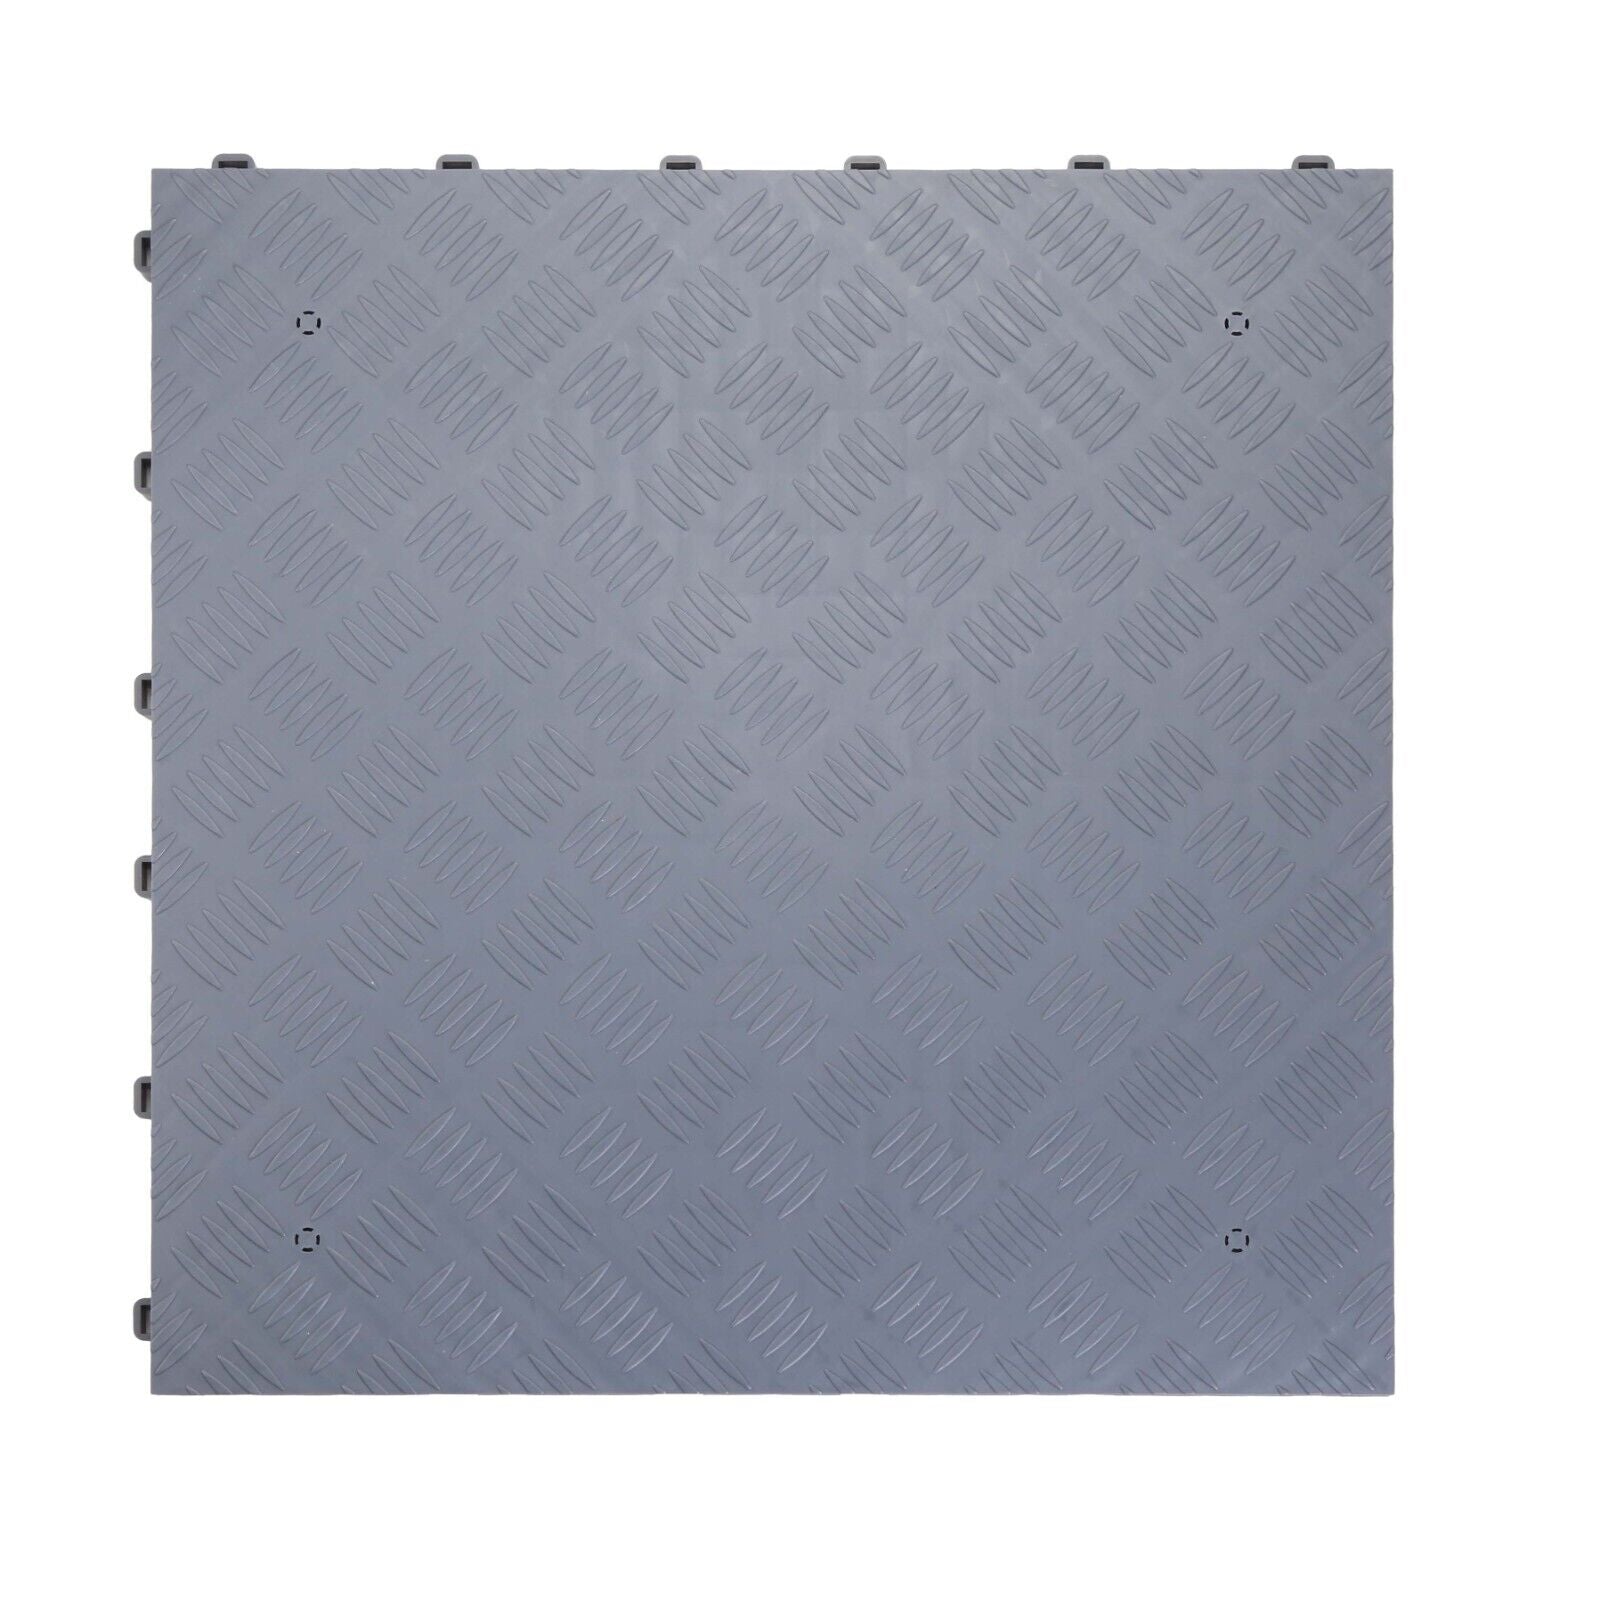 Nicoman Heavy Duty Solid Garage Floor Tiles Grey Tiles